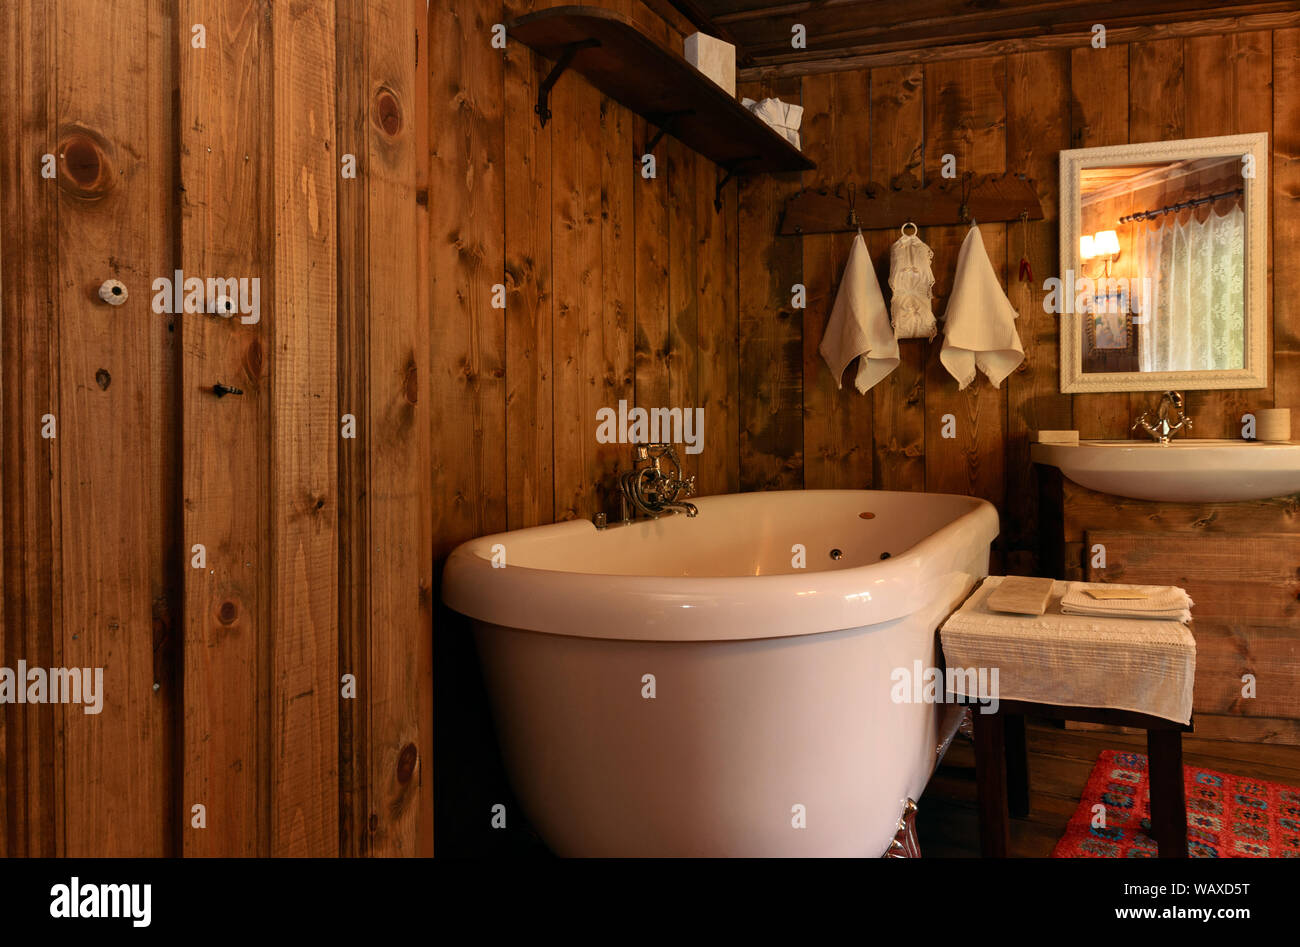 déco rétro wc - Recherche Google  Bathroom makeover, Bathroom interior,  Small bathroom